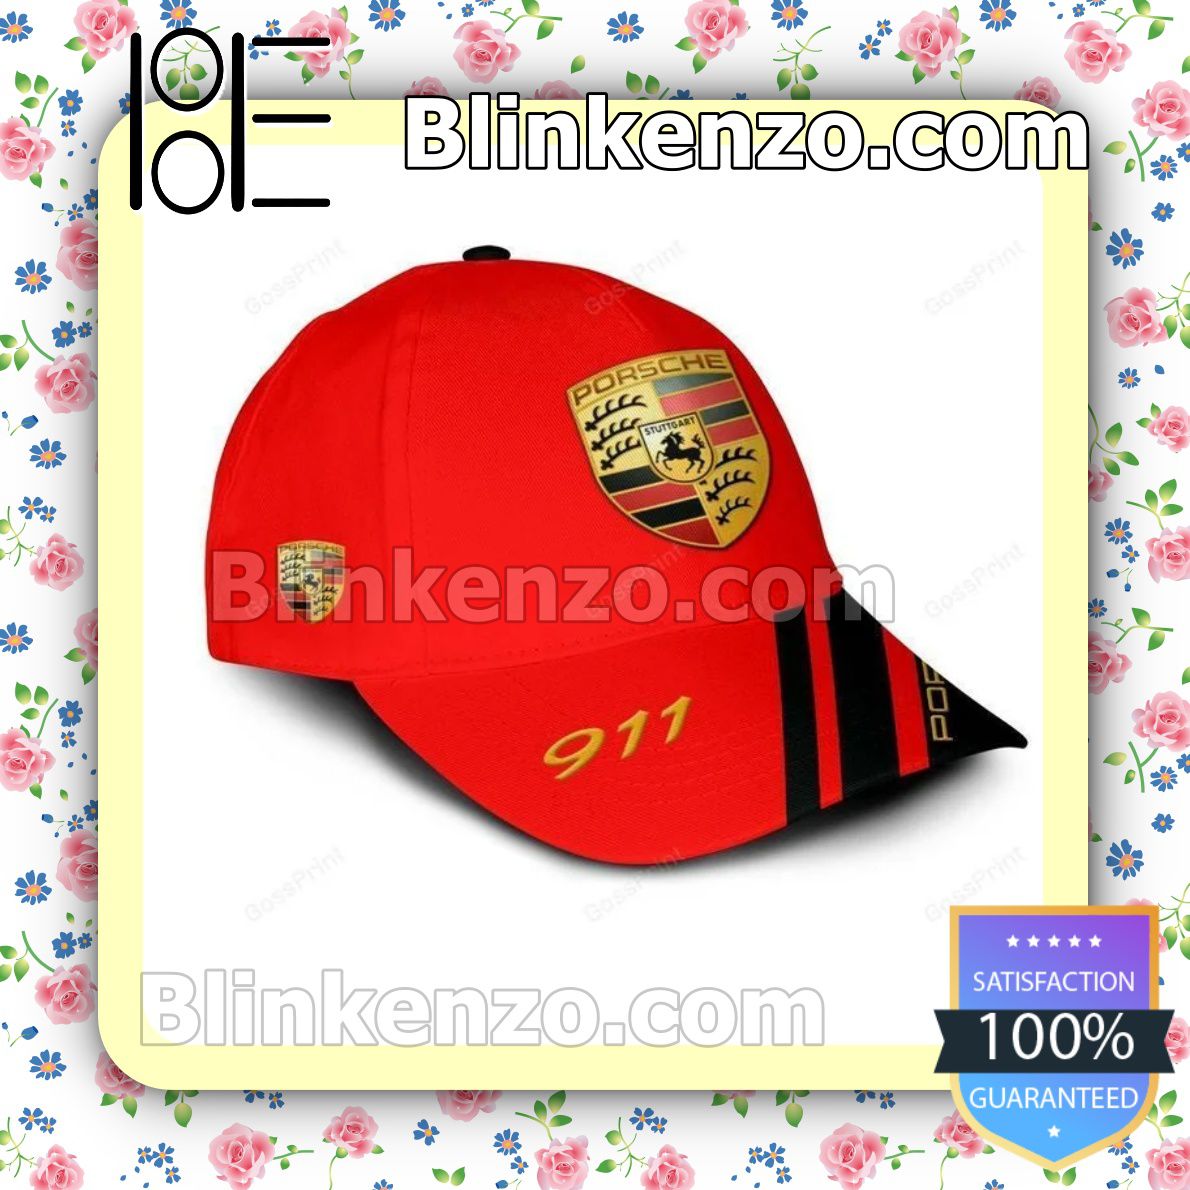 Adorable Porsche 911 Red Baseball Caps Gift For Boyfriend